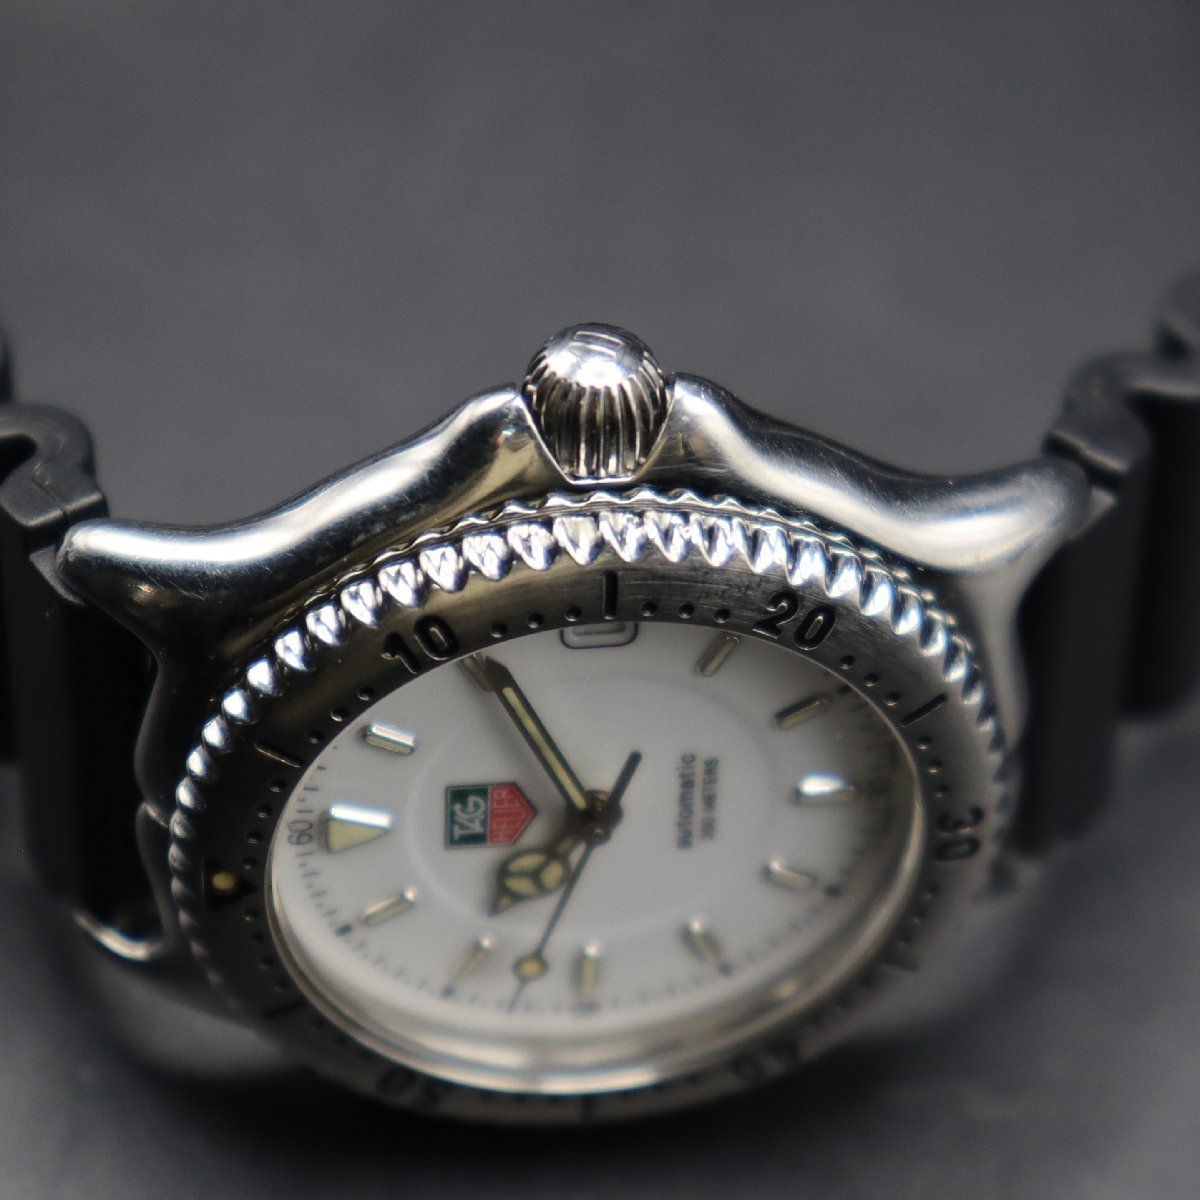 OH済 TAG HEUER タグホイヤー セルシリーズ 200M防水 WI2210 白文字盤 自動巻 デイト 新品ラバーベルト&純正バックル メンズ腕時計_画像4